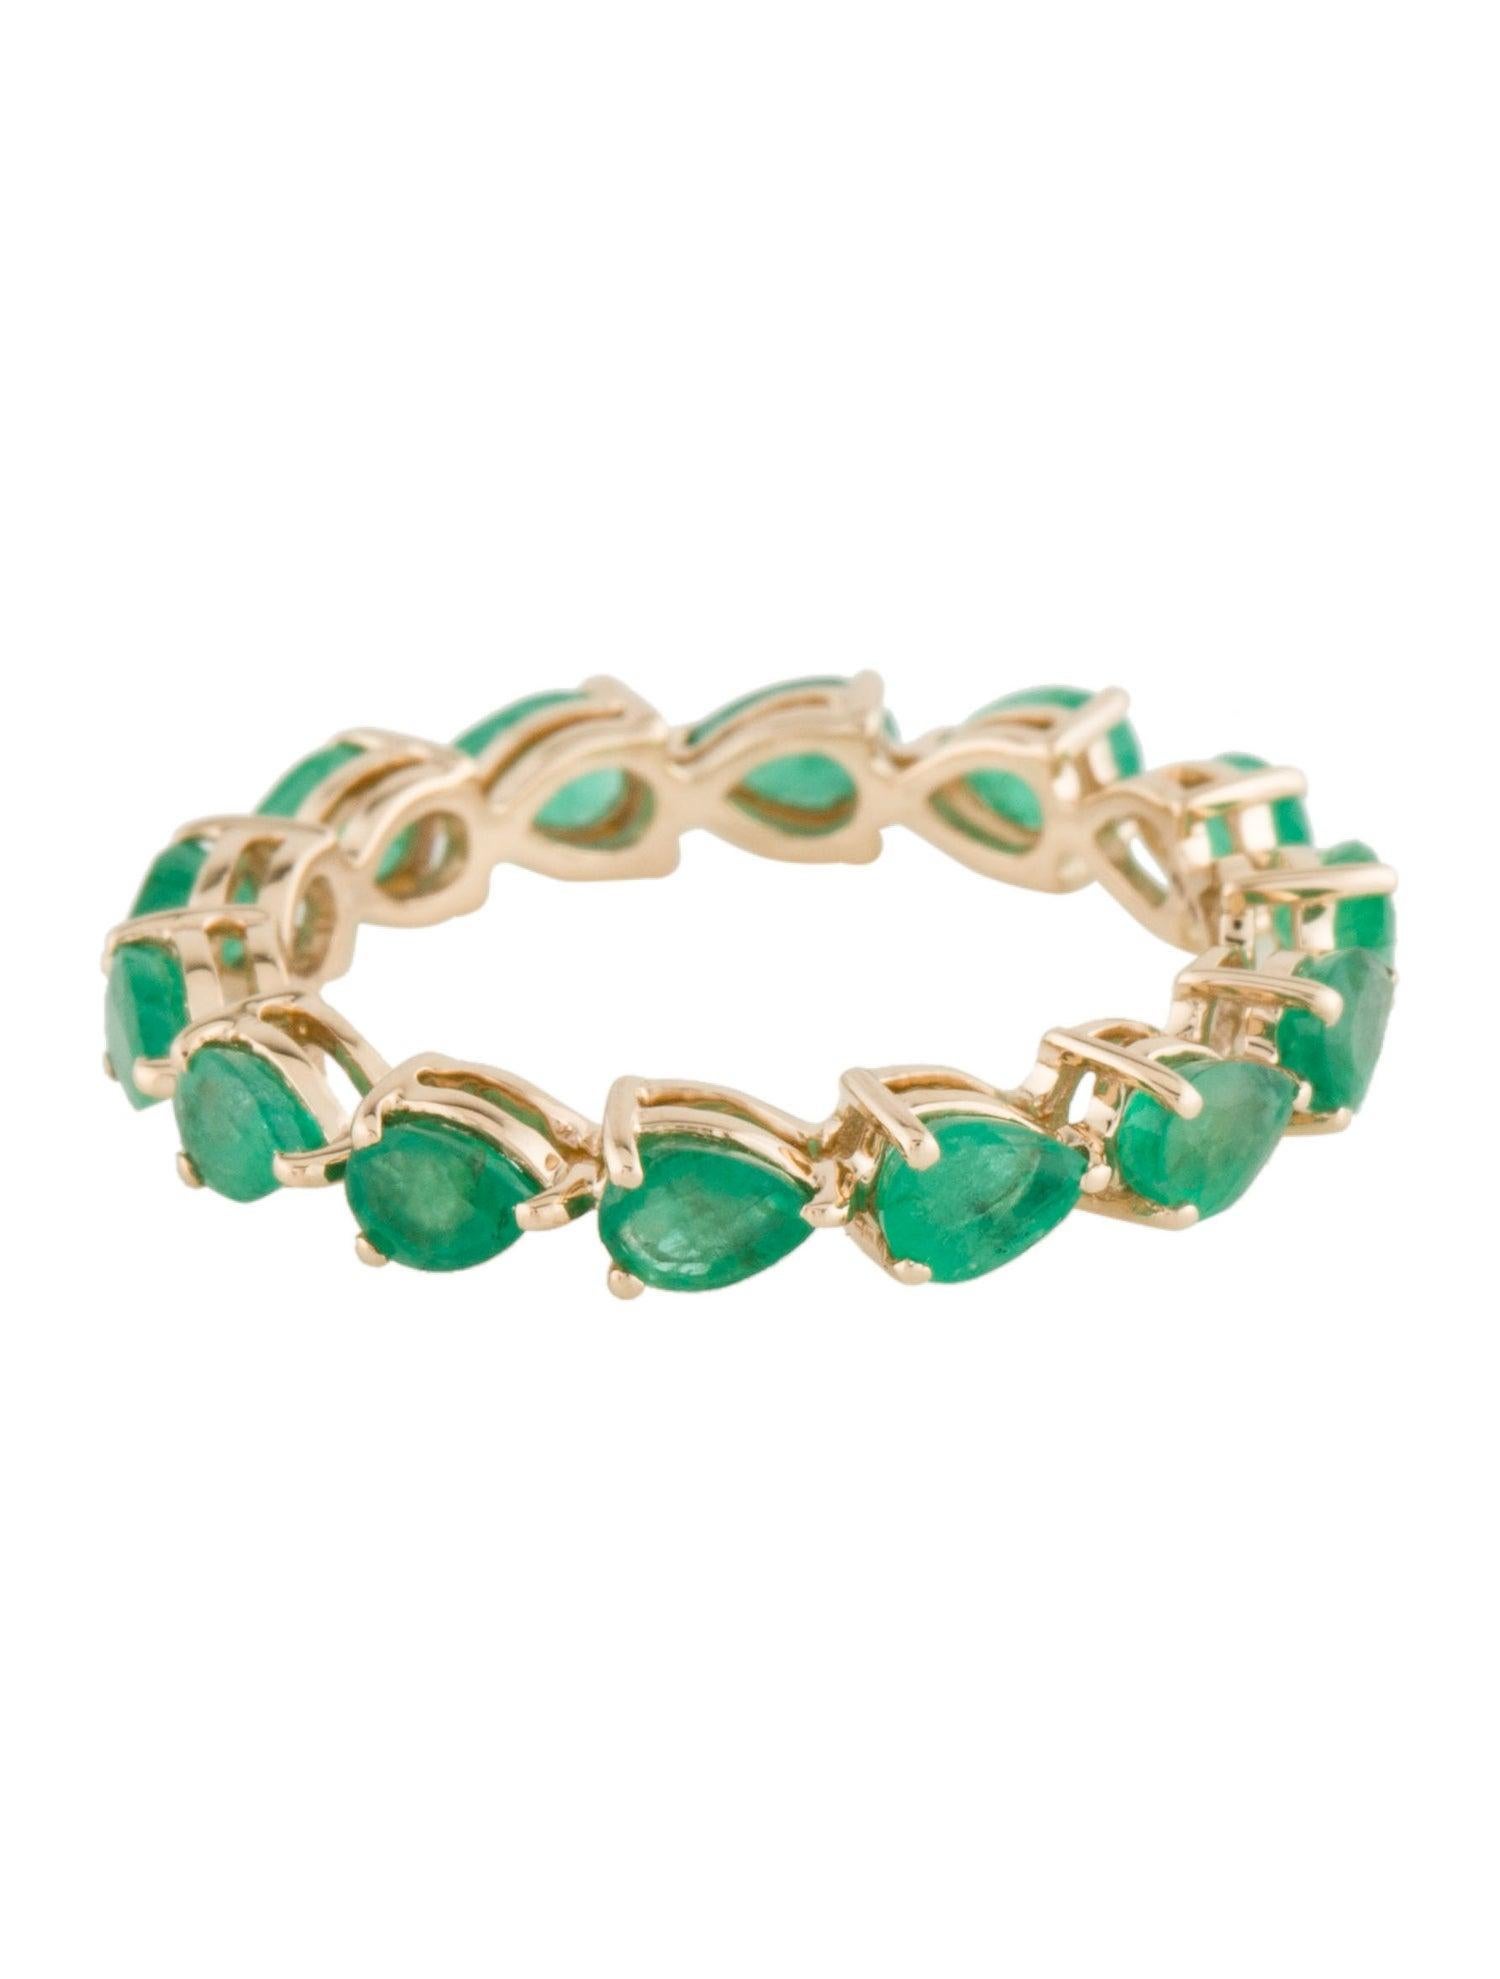 Tauchen Sie ein in die bezaubernde Anziehungskraft der Natur mit unserem Forest Ferns Emerald Ring, einem fesselnden Meisterwerk aus der Emerald Collection'S von Jeweltique. Dieser exquisite Ring ist eine Hommage an die üppige Schönheit der grünen